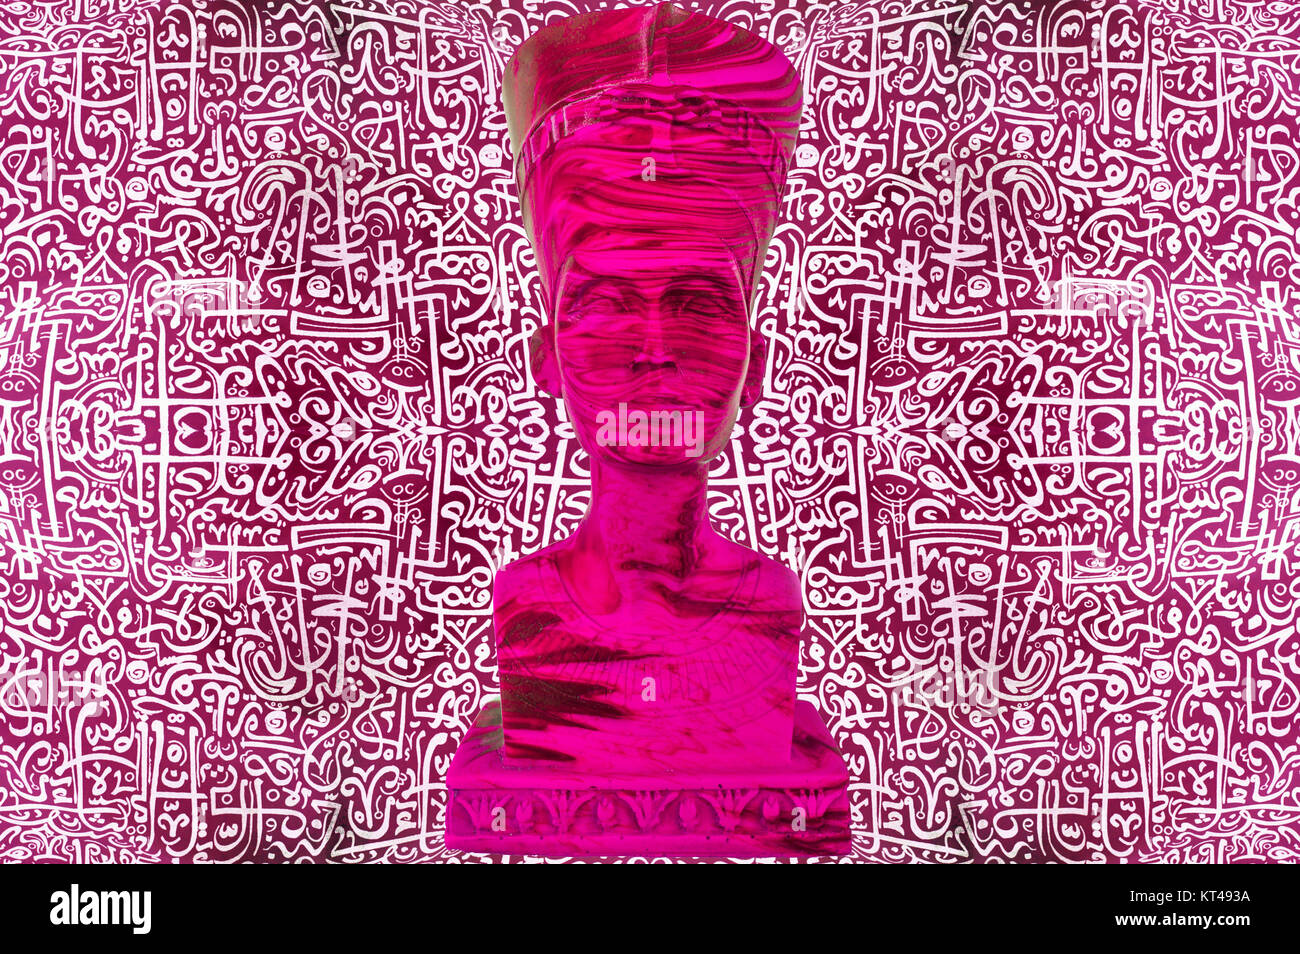 Ägyptischen Pharao Statue / Antike ägyptische Pharao Statue Stockfoto